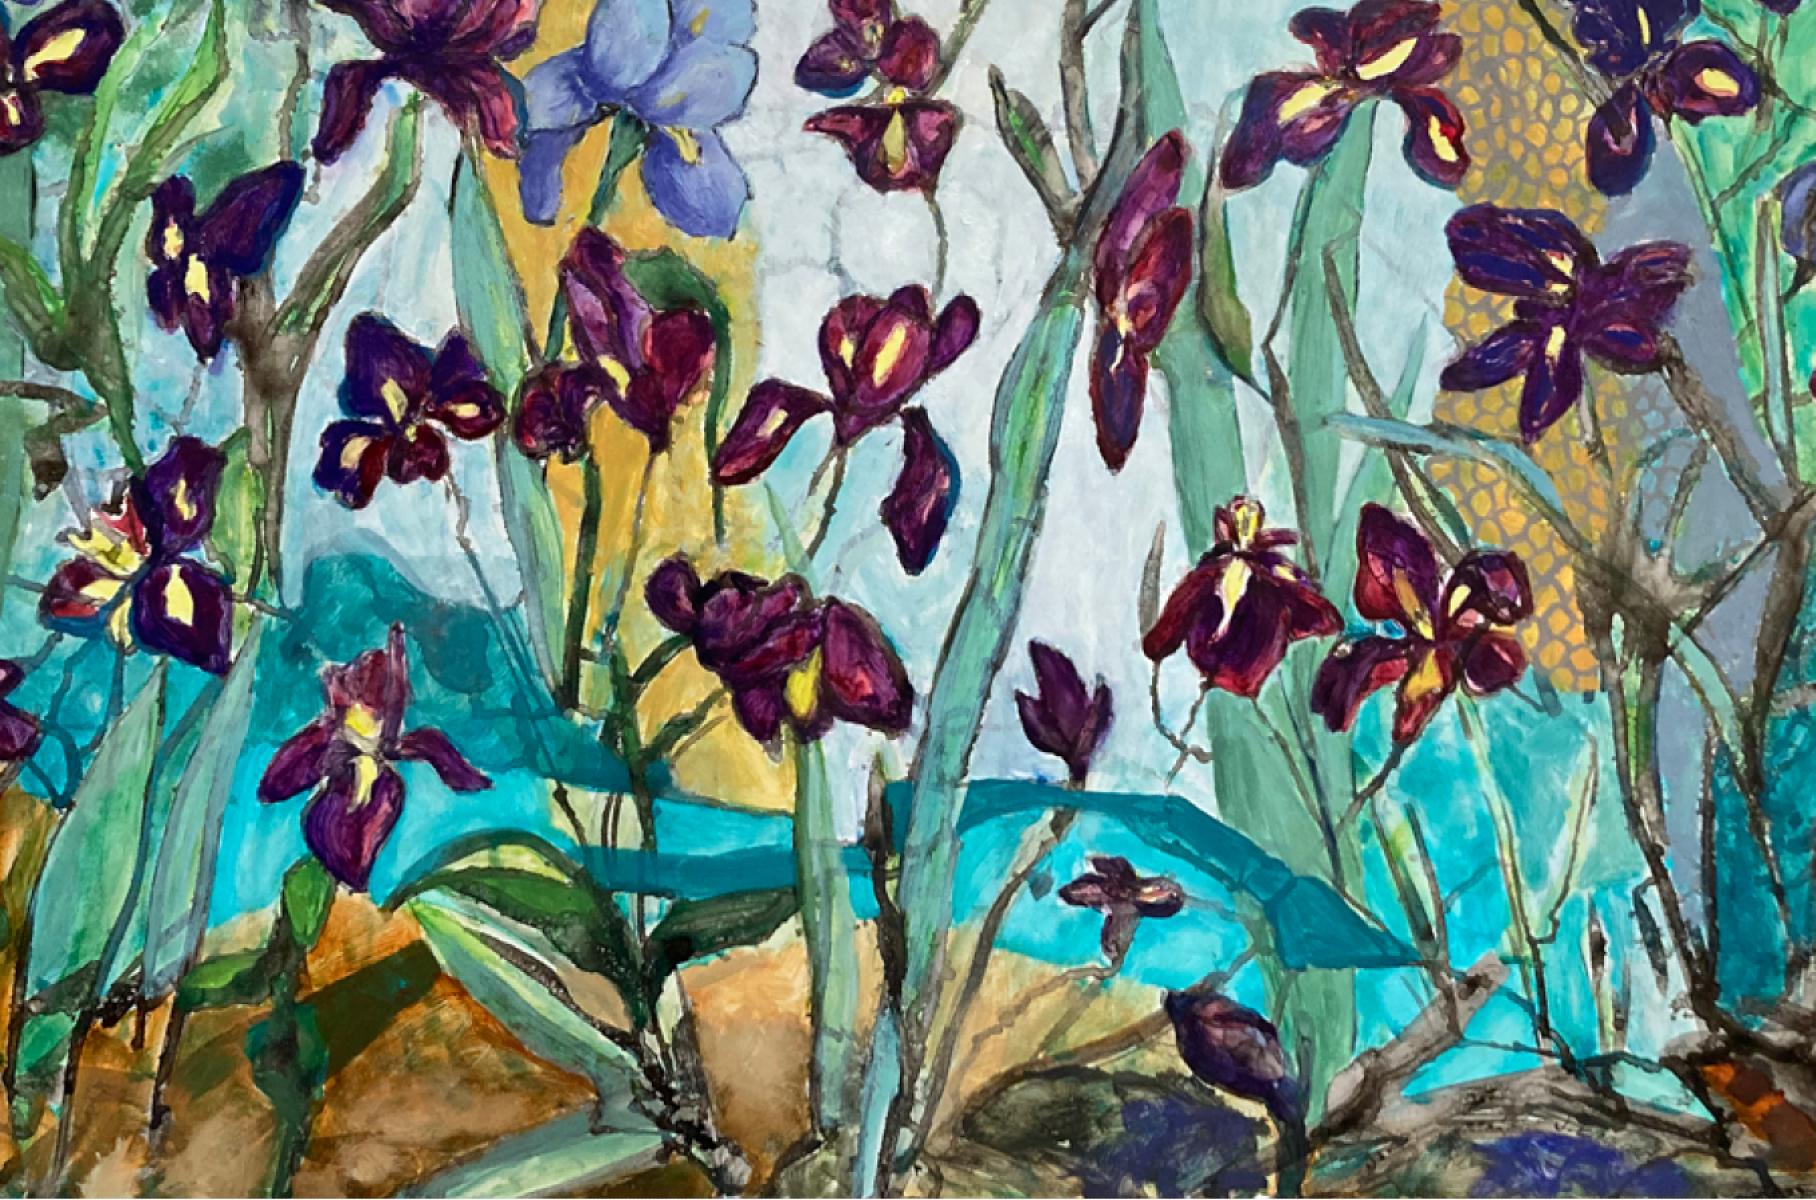 Schwertlilien von  Die texanische Künstlerin Julie England ist eine  Tinte und  Aquarell, Öl auf Yupo-Papier. Die Größe der Schwertlilien  ist  Bild  26